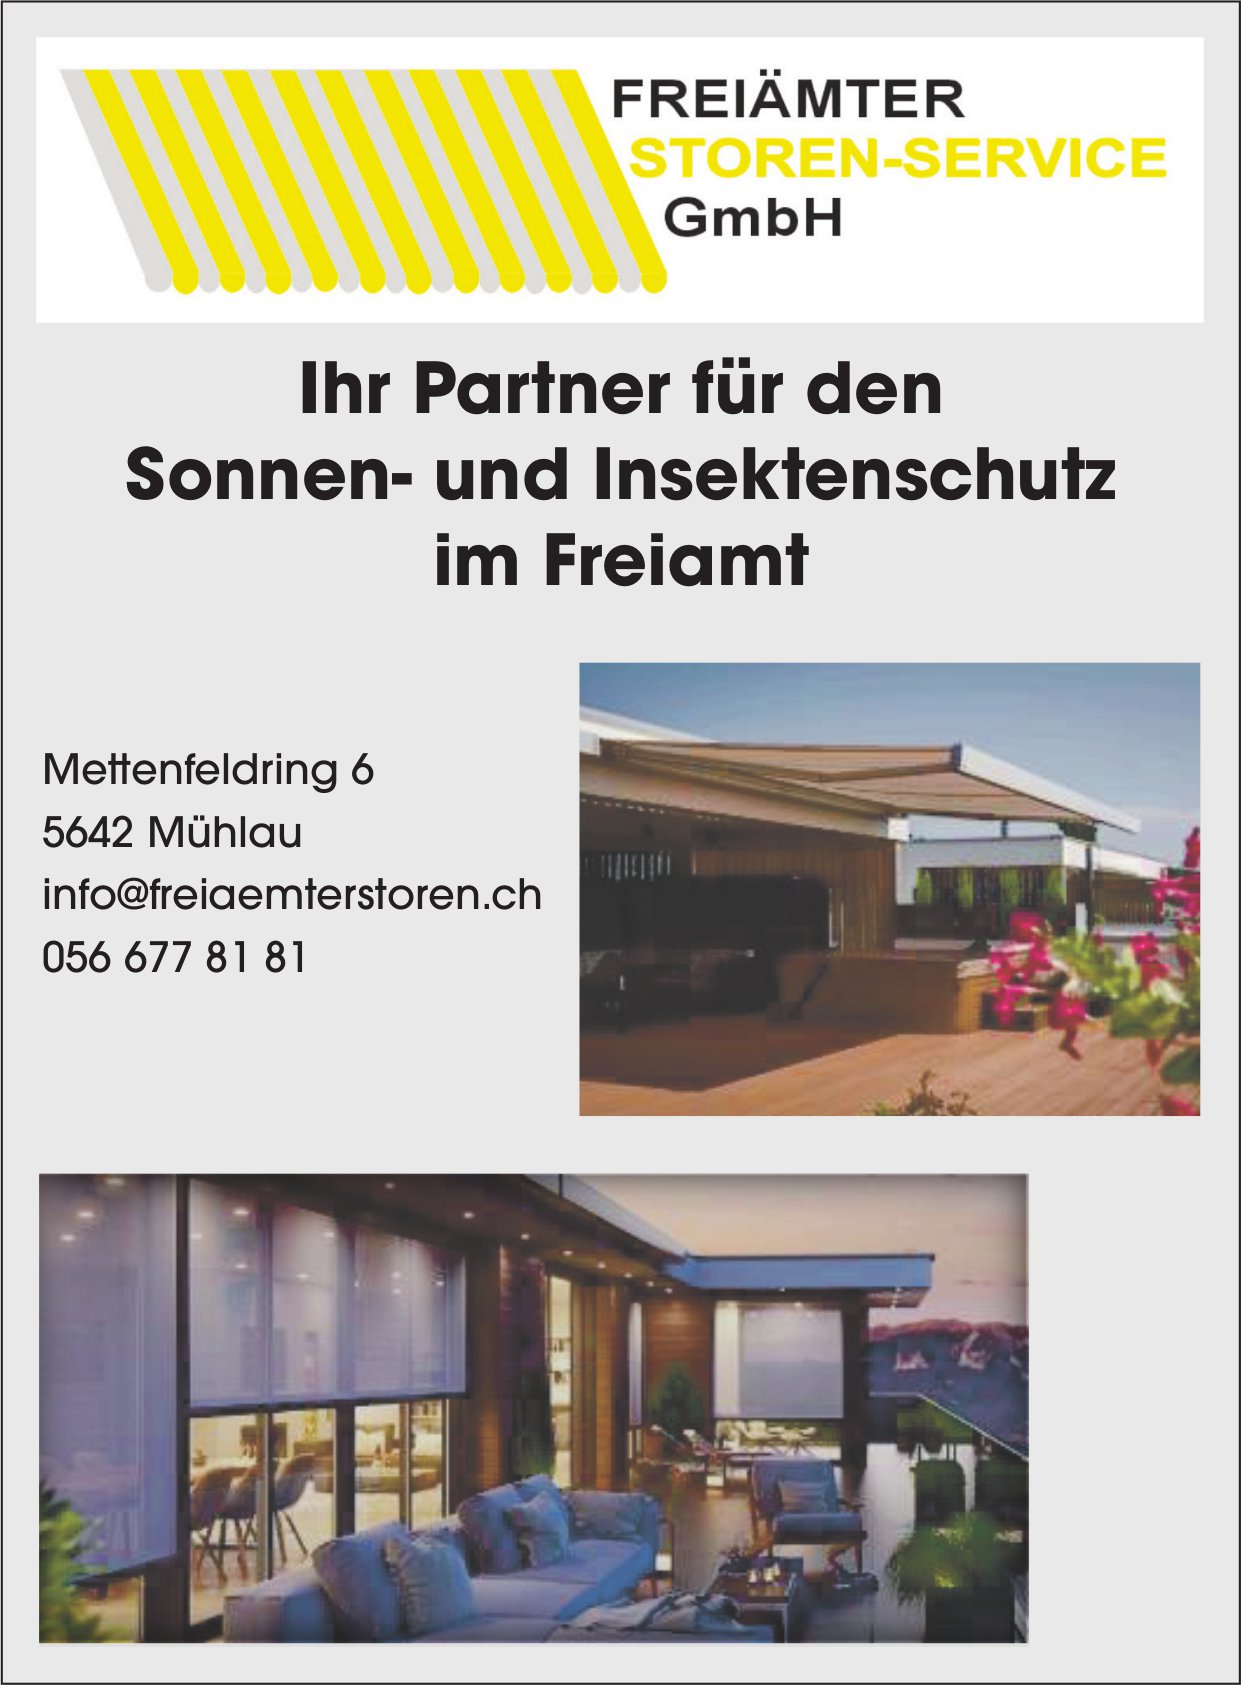 Freiämter Storen-Service GmbH, Mühlau - Sonnen- und Insektenschutz im Freiamt